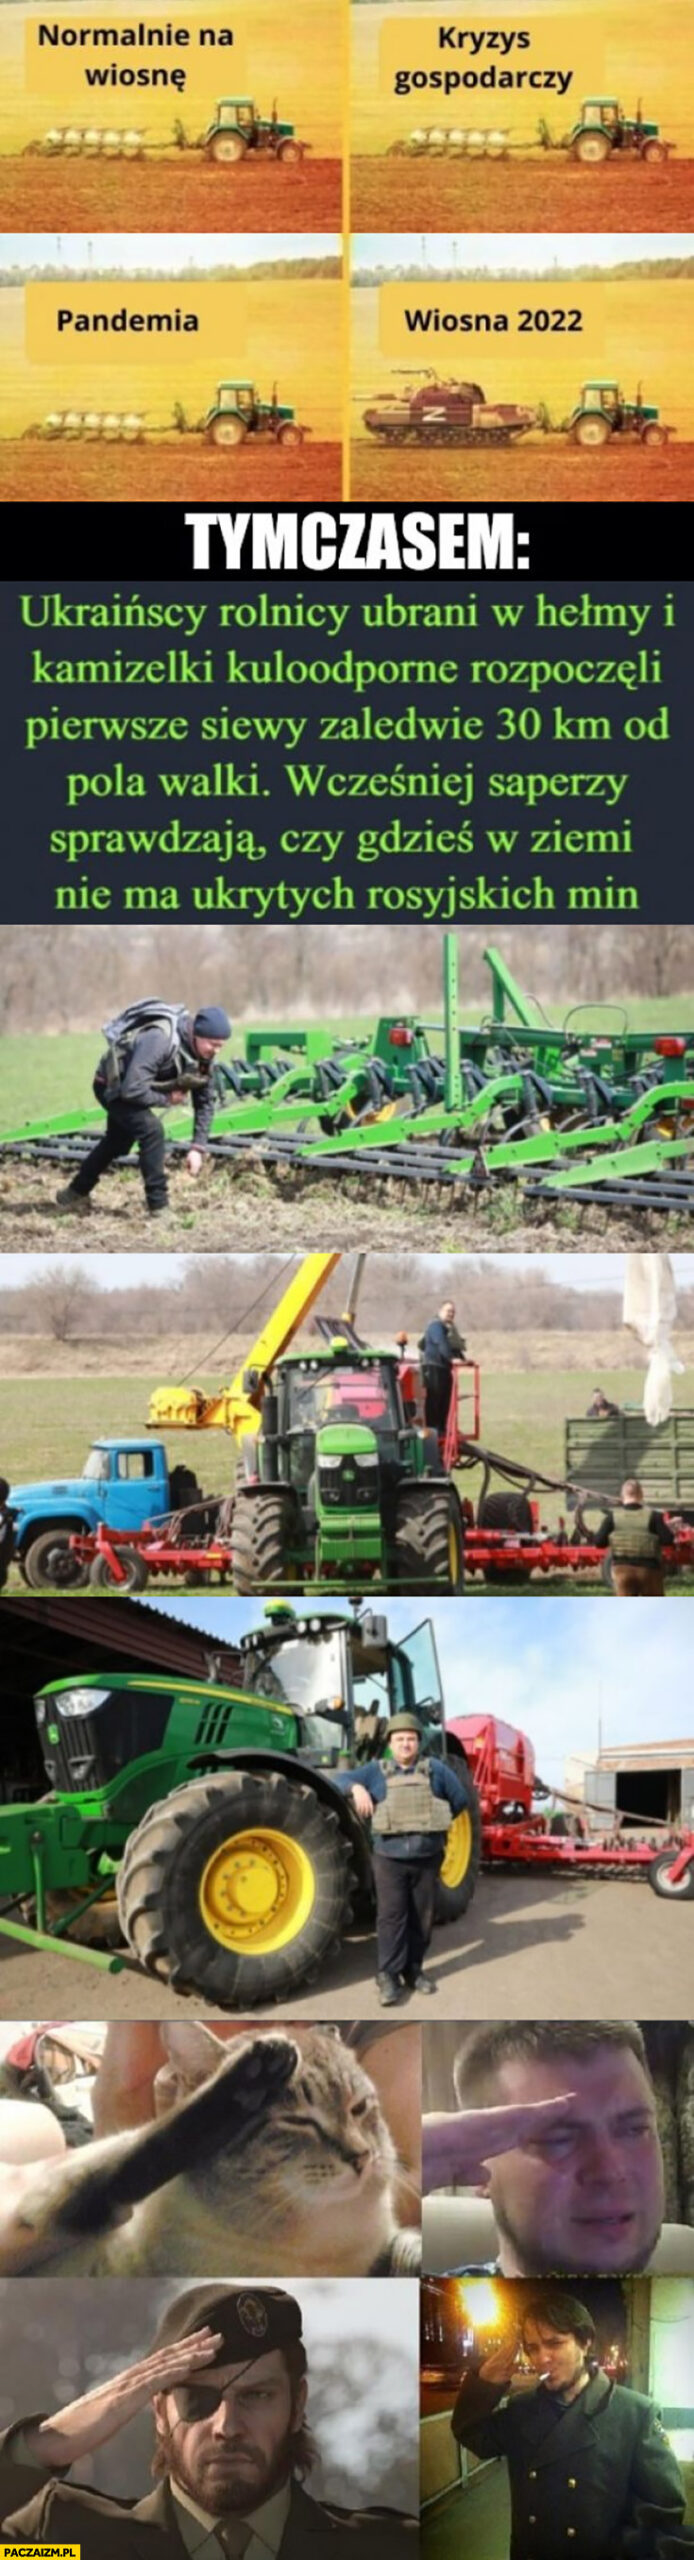 Ukraińscy farmerzy rolnicy rozpoczęli siewy 30 km od pola walki